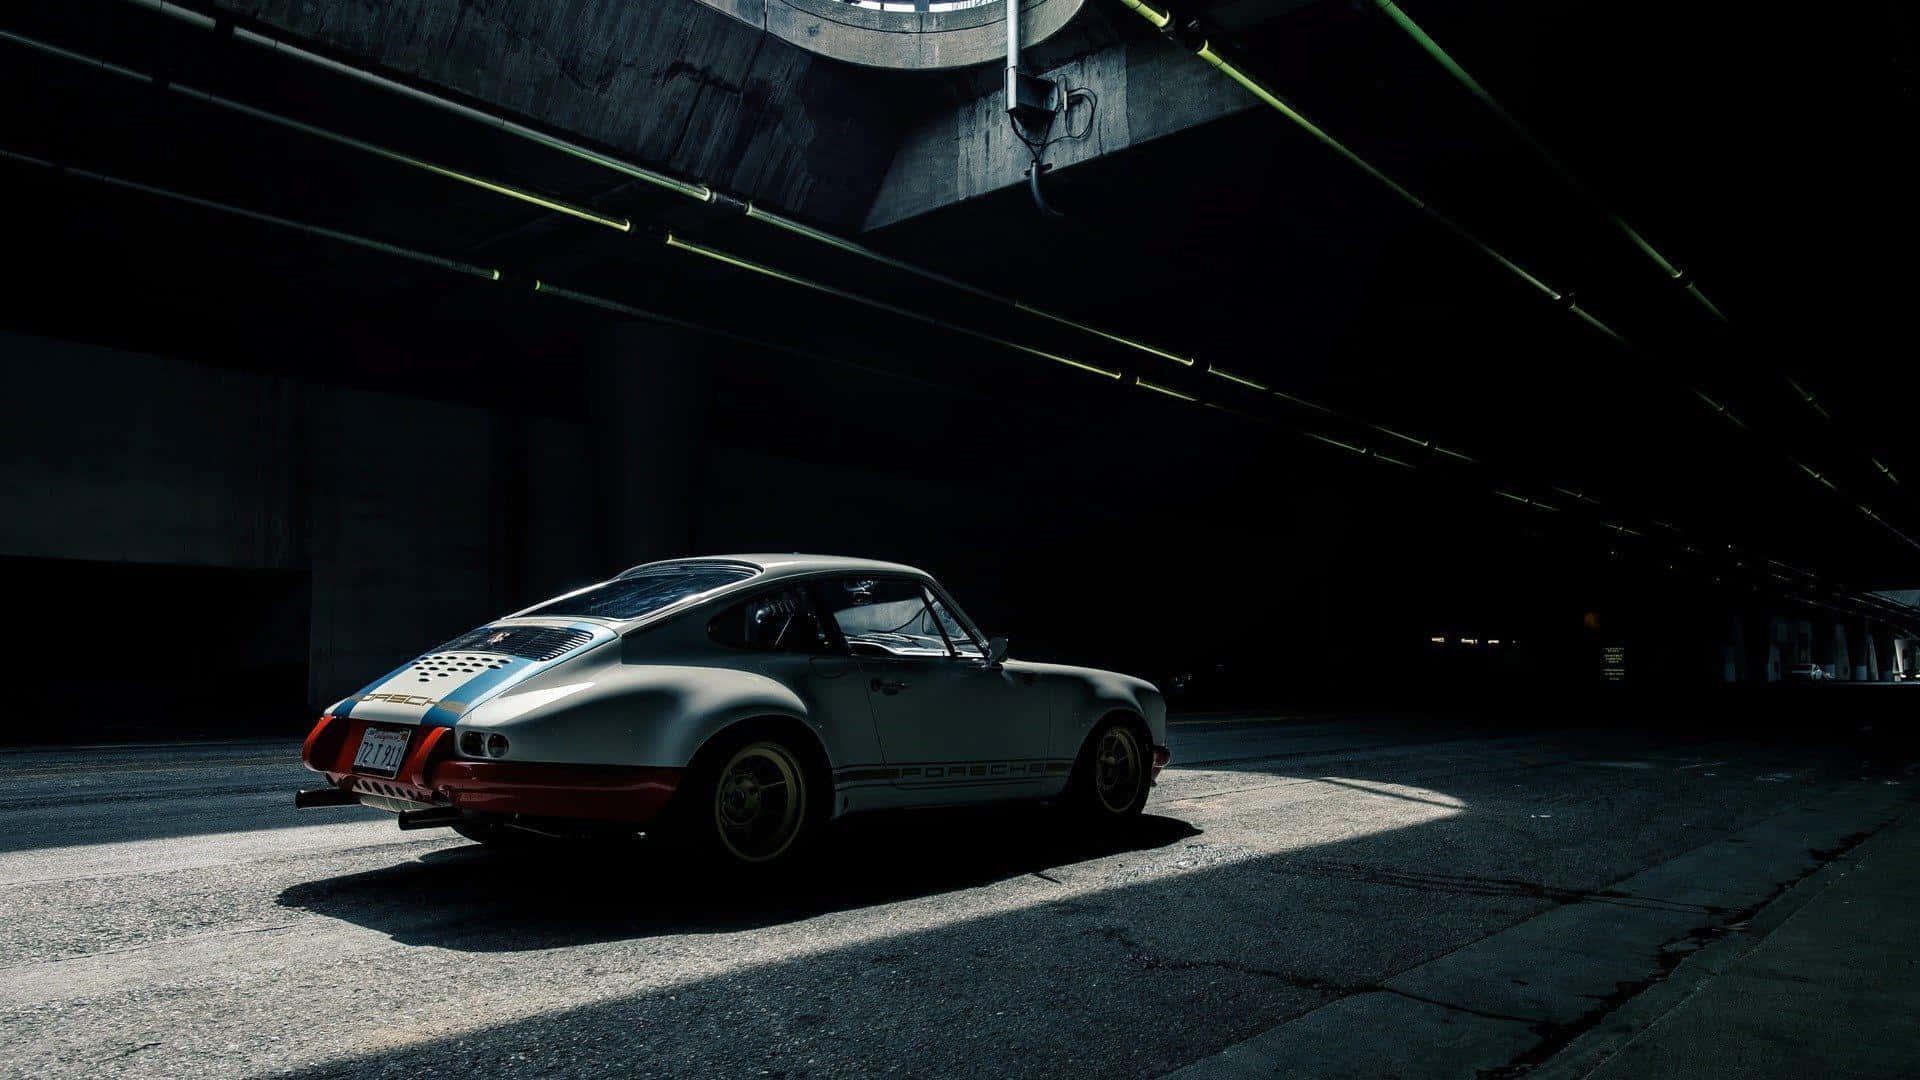 Porsche1920 X 1080 Hintergrund Ebenbild